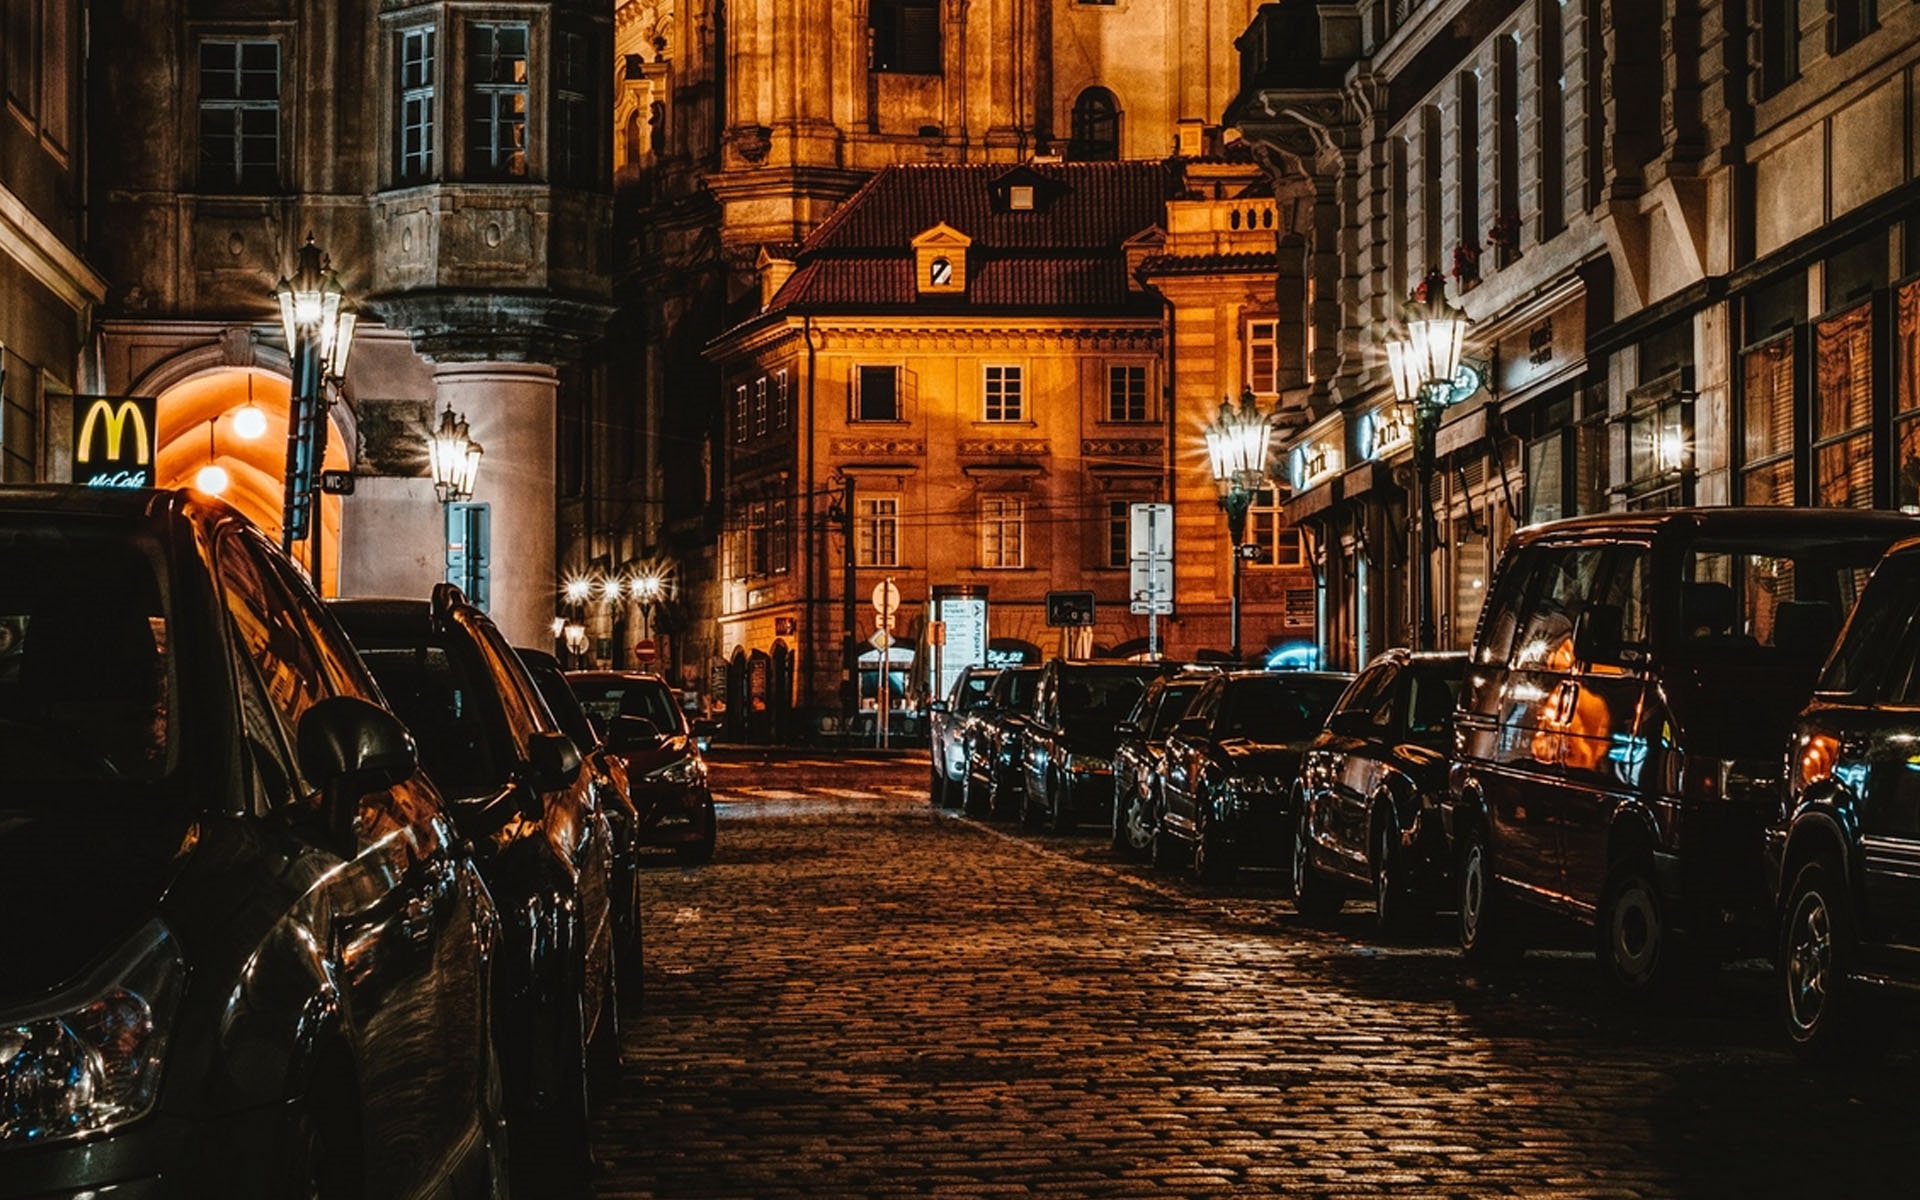 City Street At Night Wallpaper